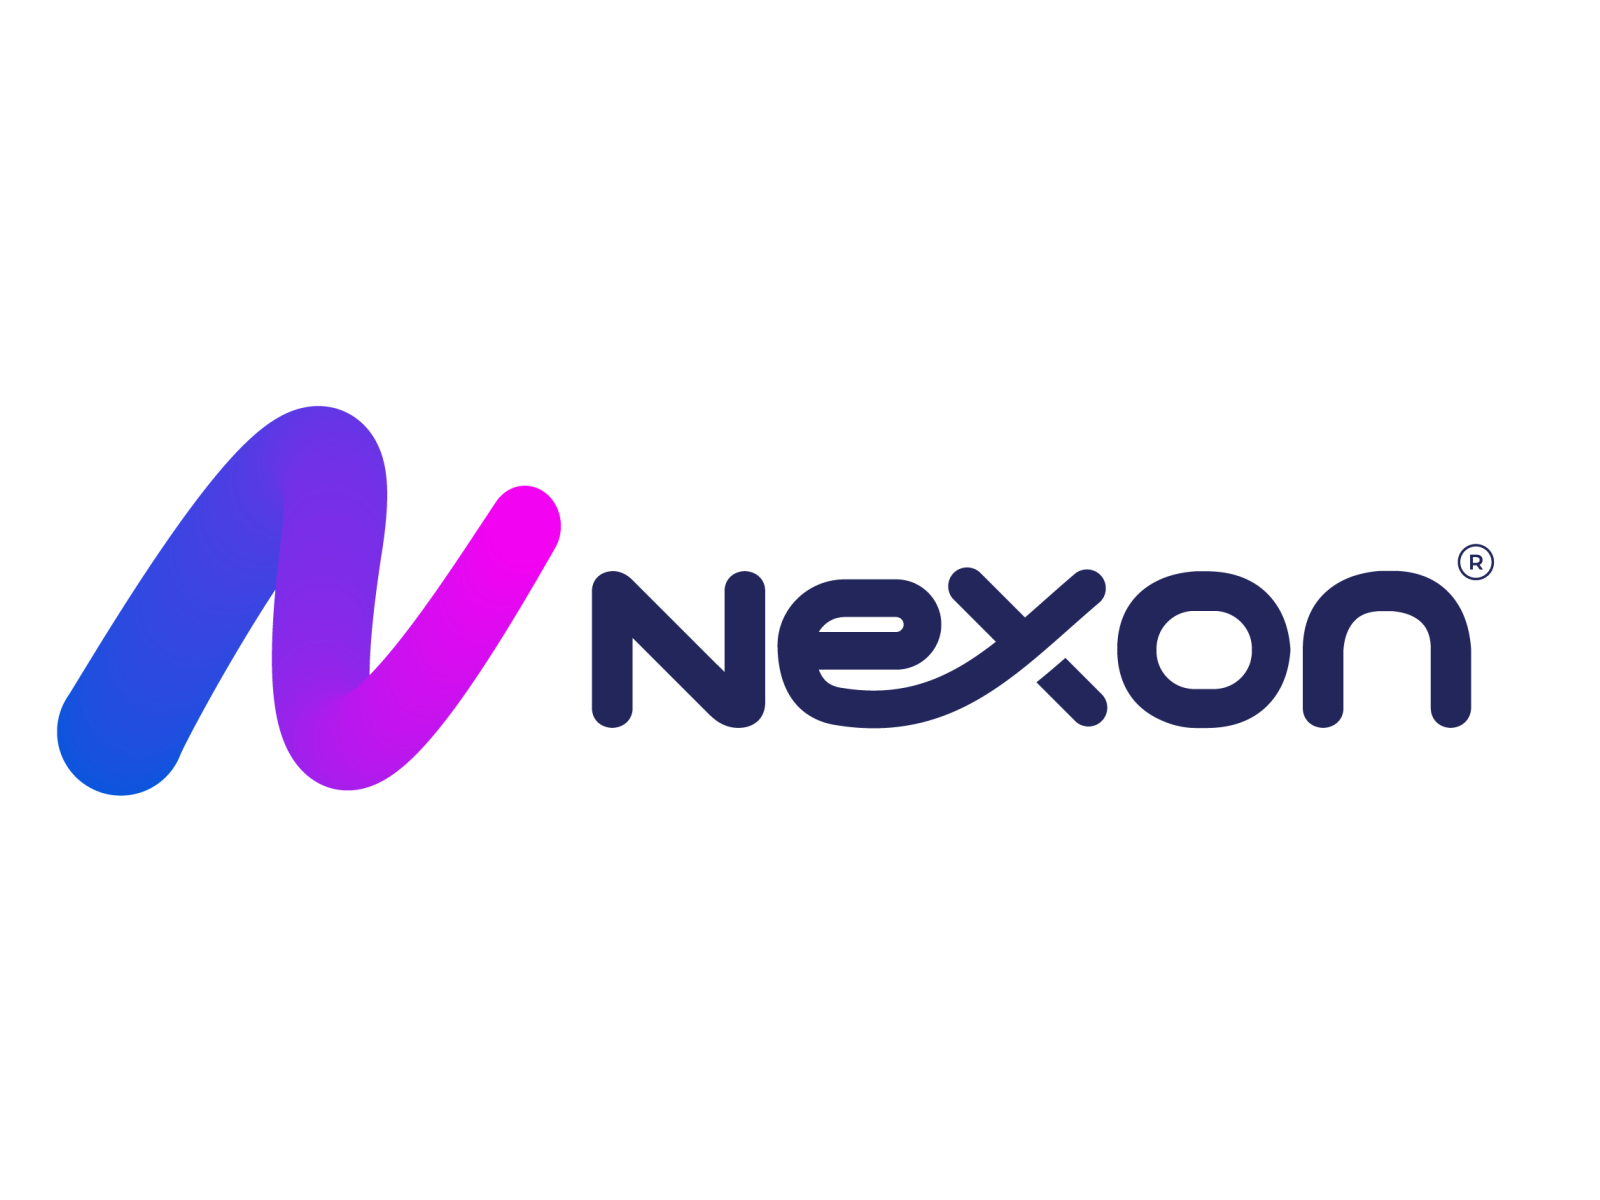 Nexon Logo Design by Danpengzhang